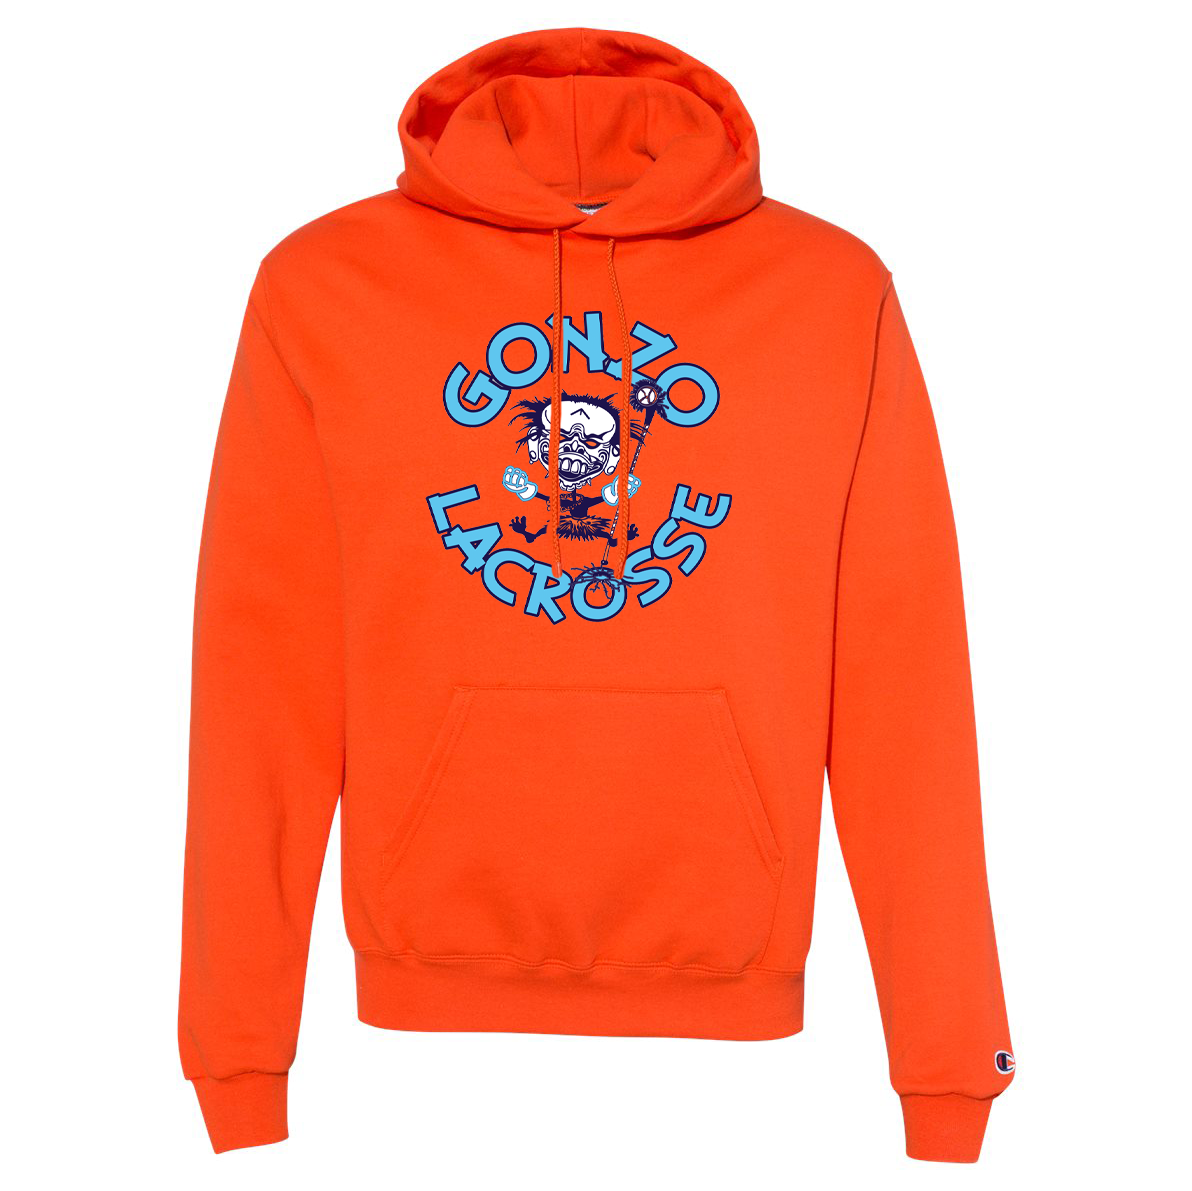 Gonzo Lacrosse Champion Double Dry Eco Hooded Sweatshirt